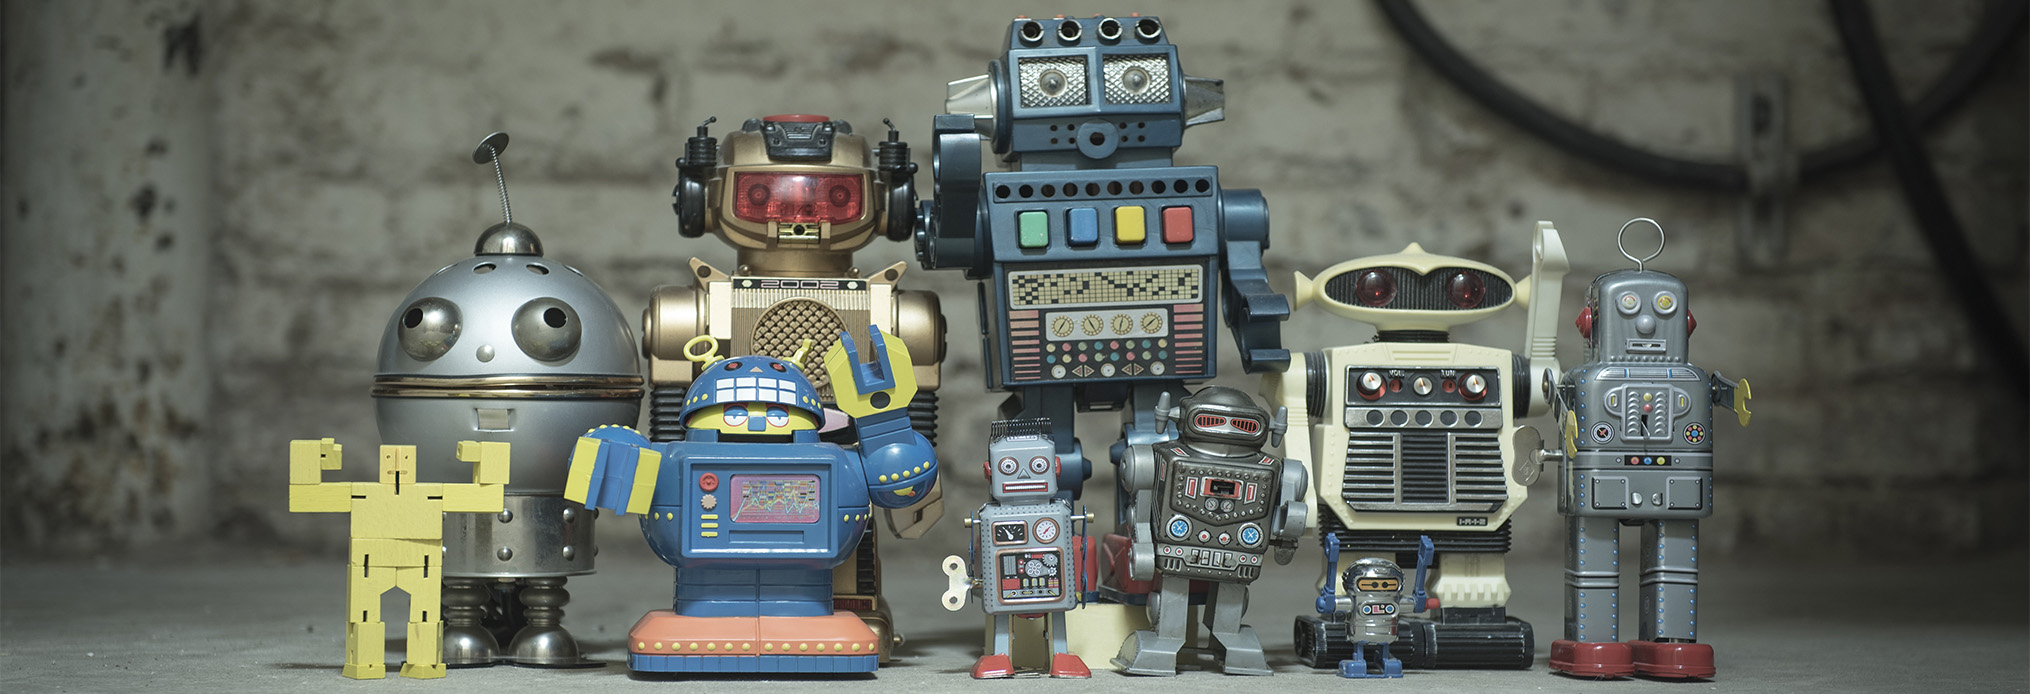 Kas ir Forex roboti un vai tie tiešām strādā?, Automatizētu tirdzniecības robotu darbība